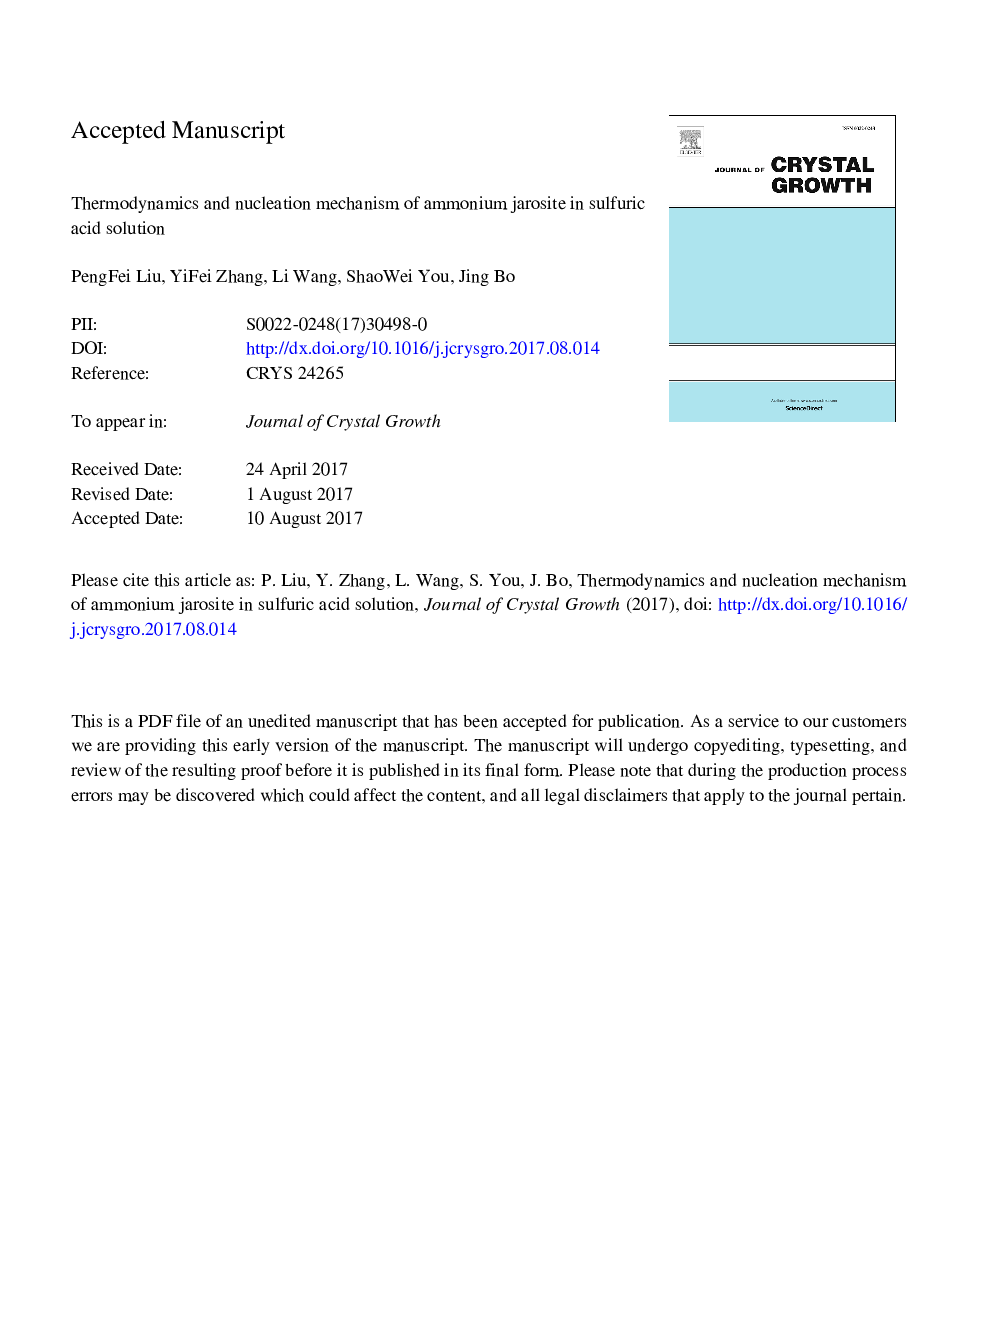 ترمودینامیک و مکانیزم مولکولی یاروسیت آمونیوم در محلول اسید سولفوریک 